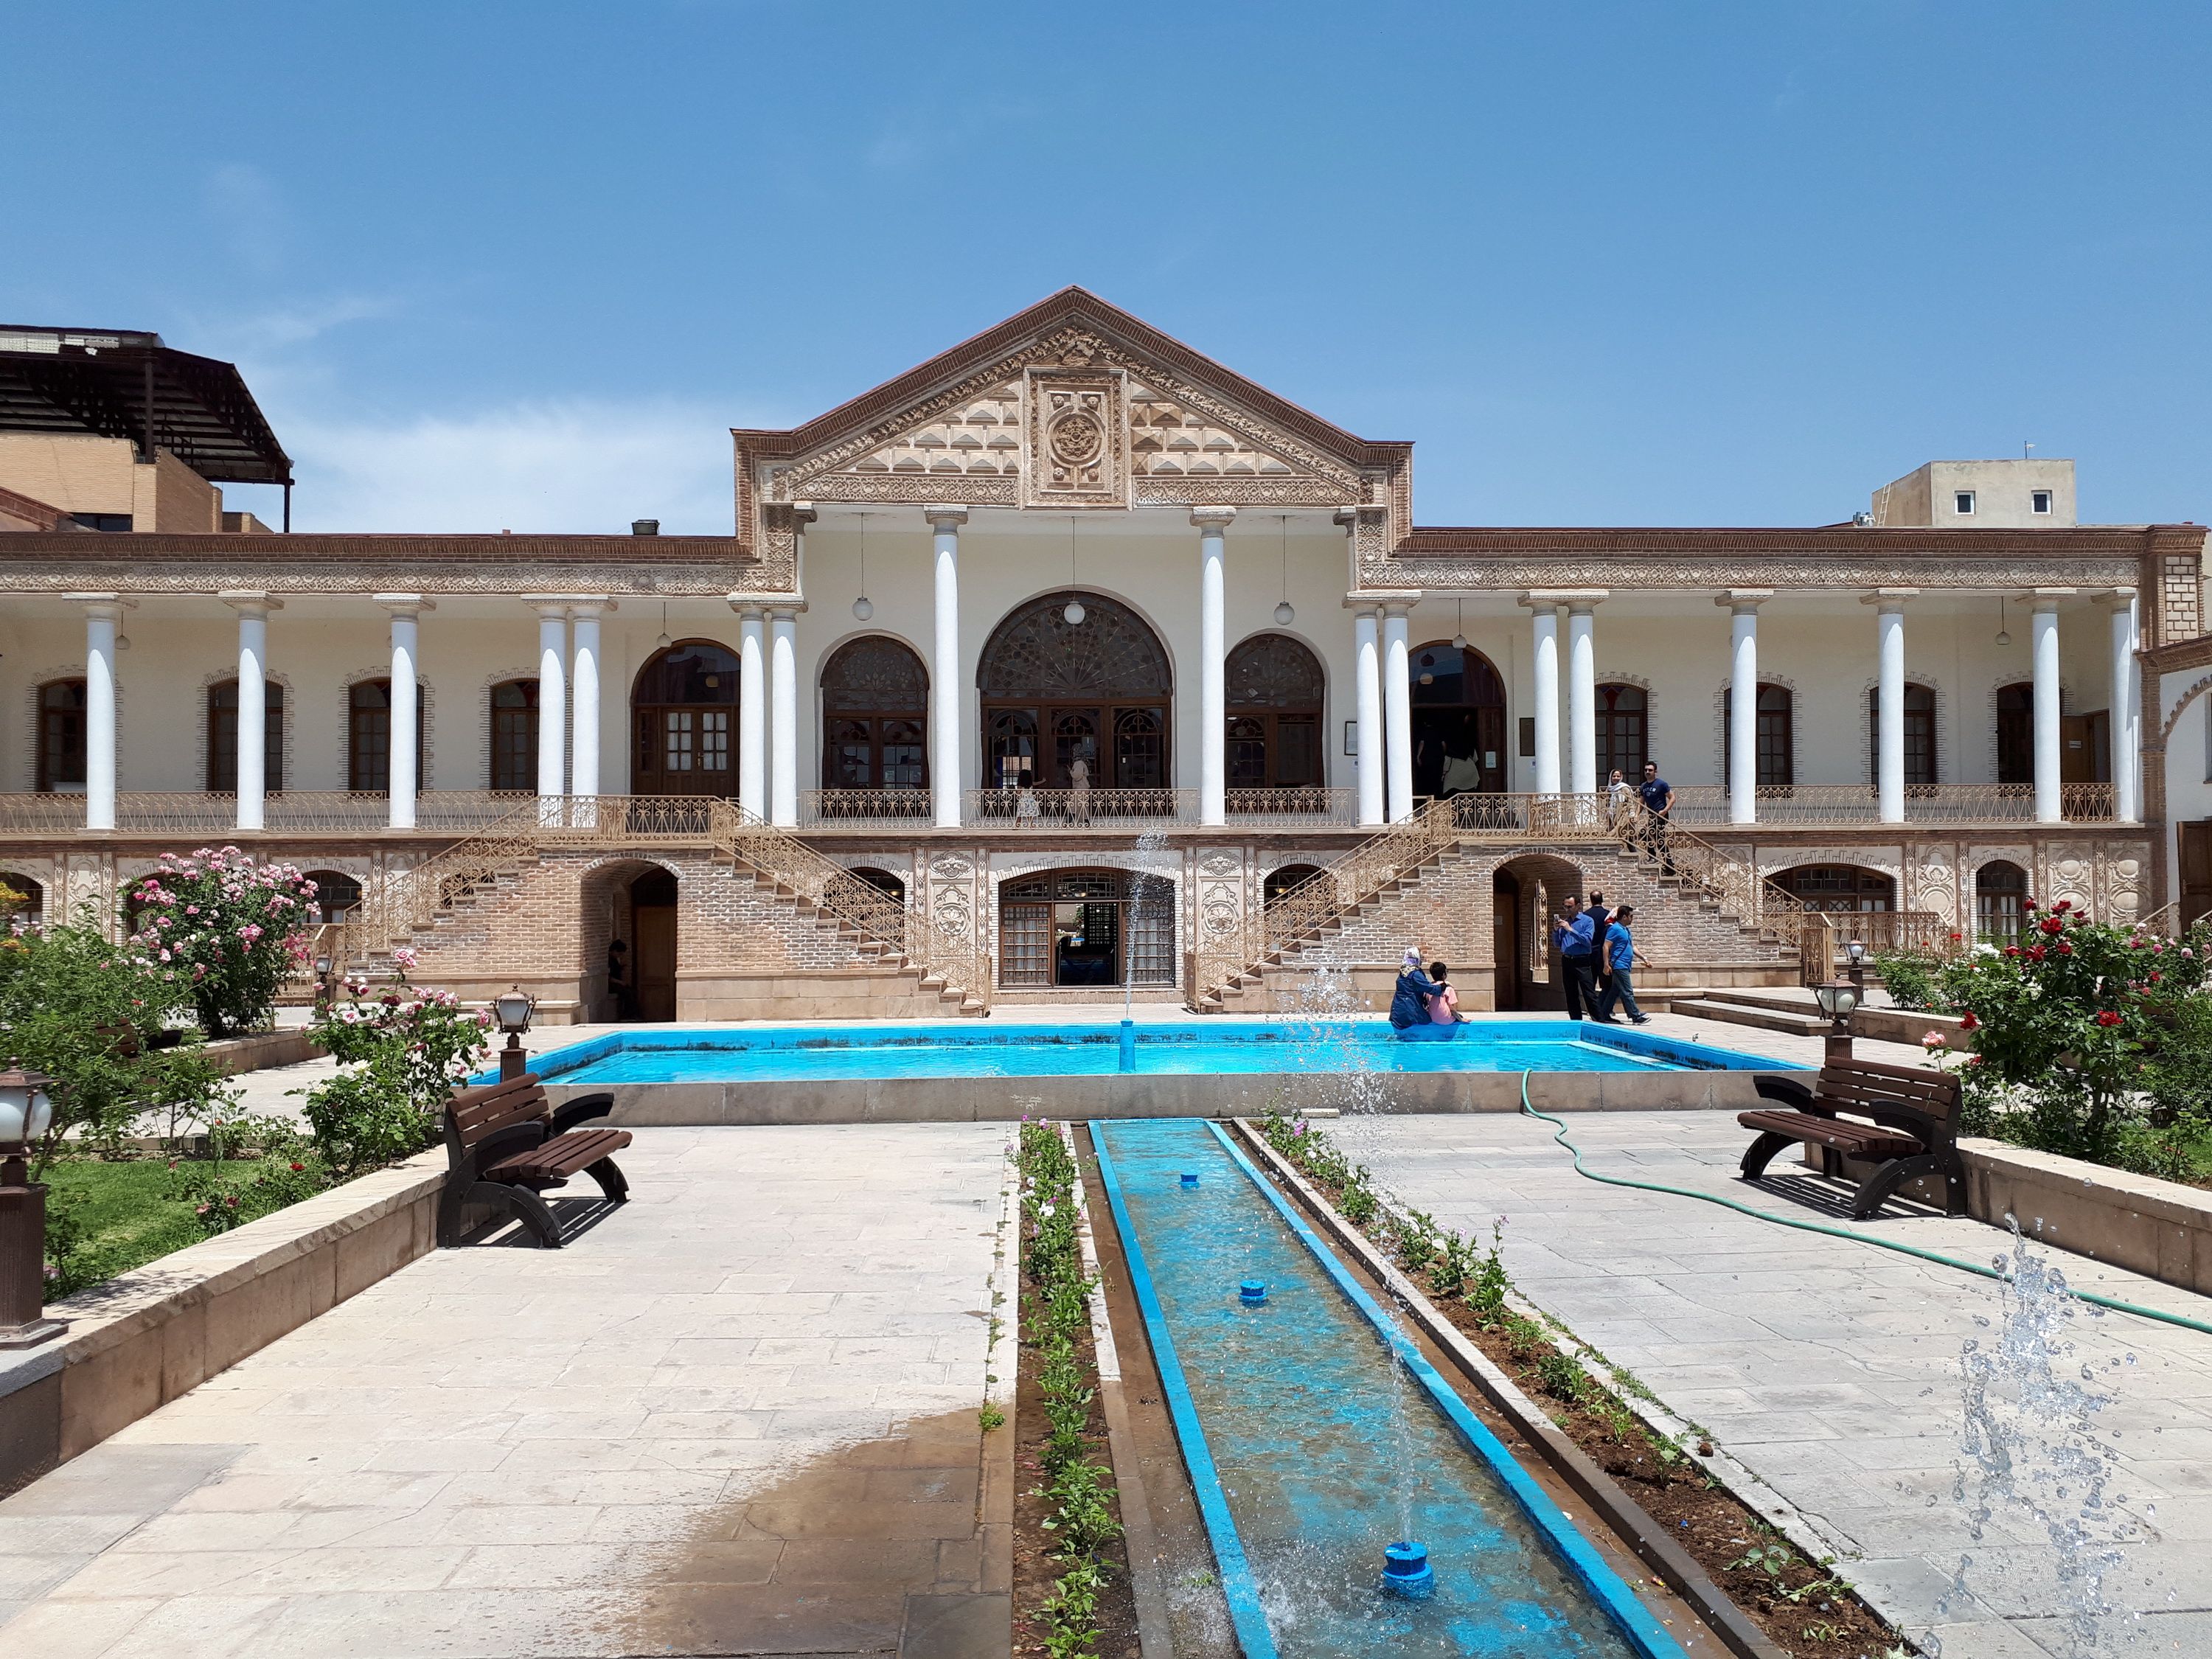 Qajar Museum of Tabriz